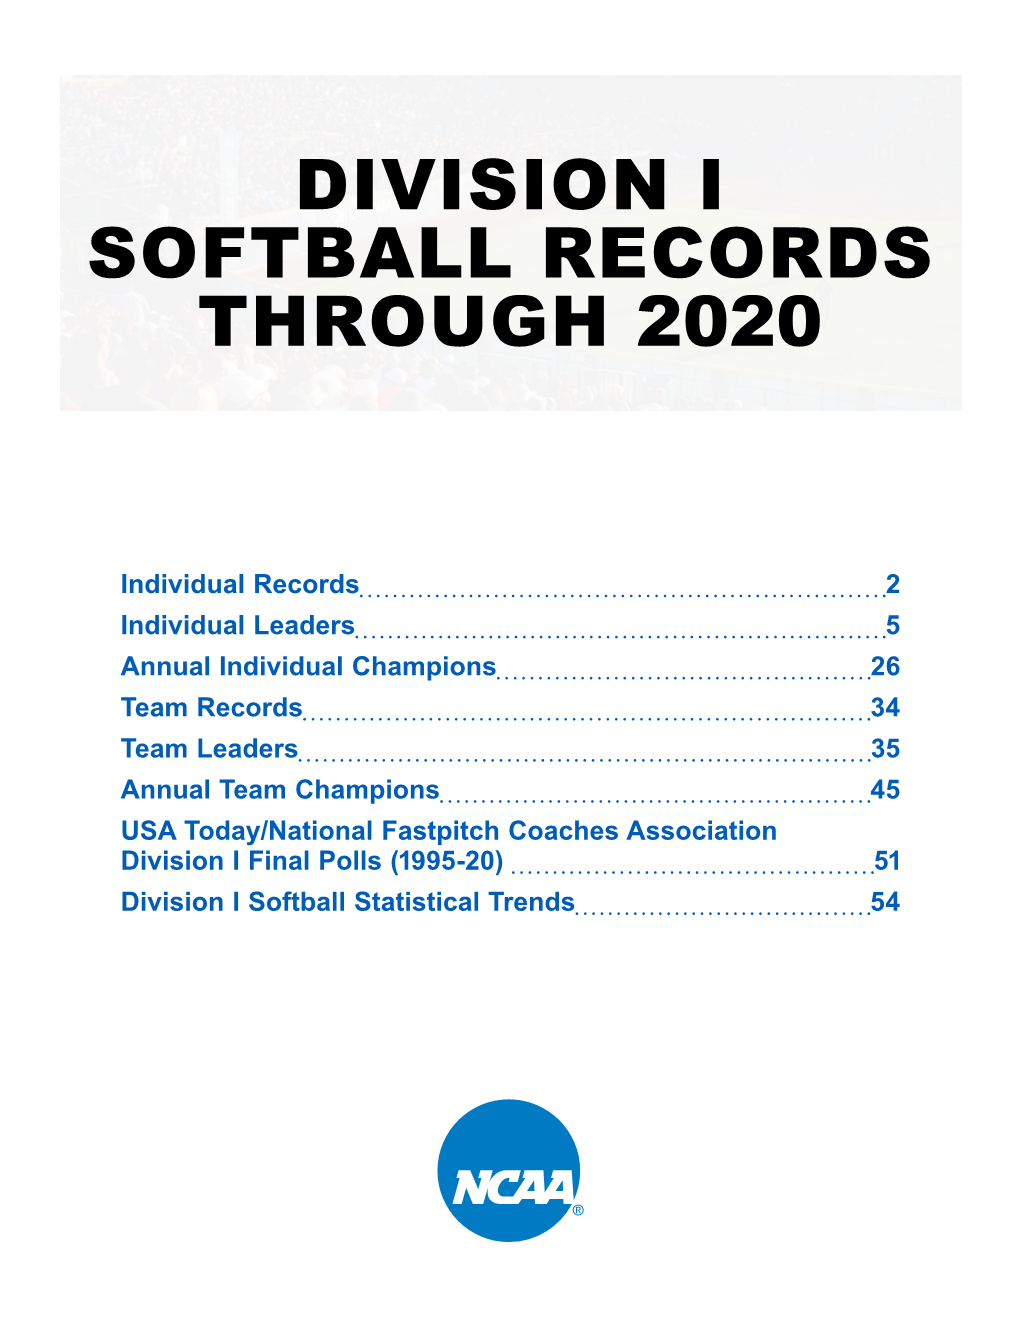 Division I Softball Records Through 2020